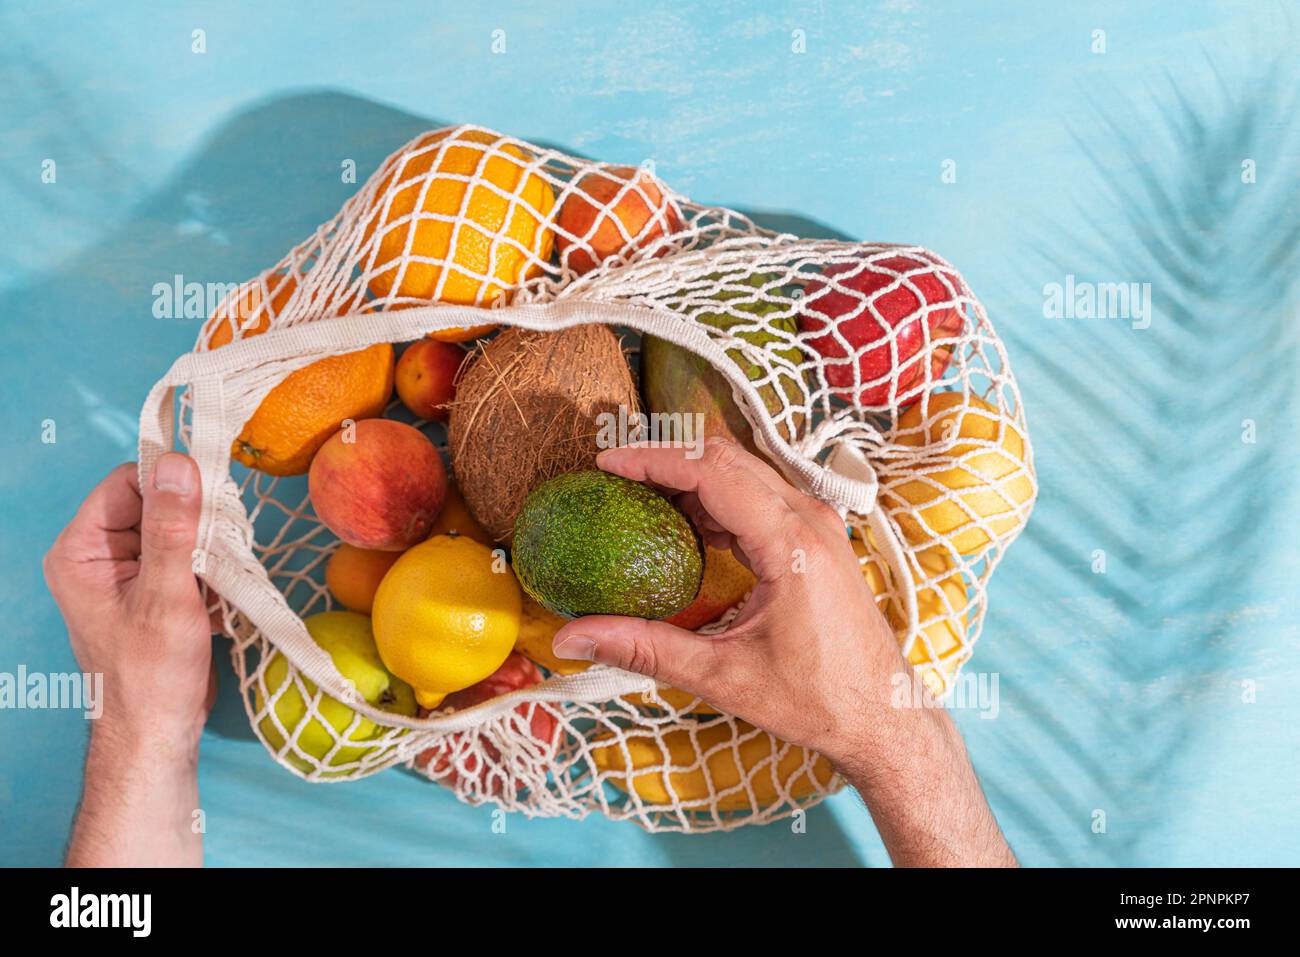 Männerhandgelenk, das Avocadofrüchte aus einer Einkaufstasche mit tropischen Früchten nimmt. Blauer Hintergrund mit Palmenblattschatten, Sonne und Sonnenlicht. Nachhaltiges Leben Stockfoto